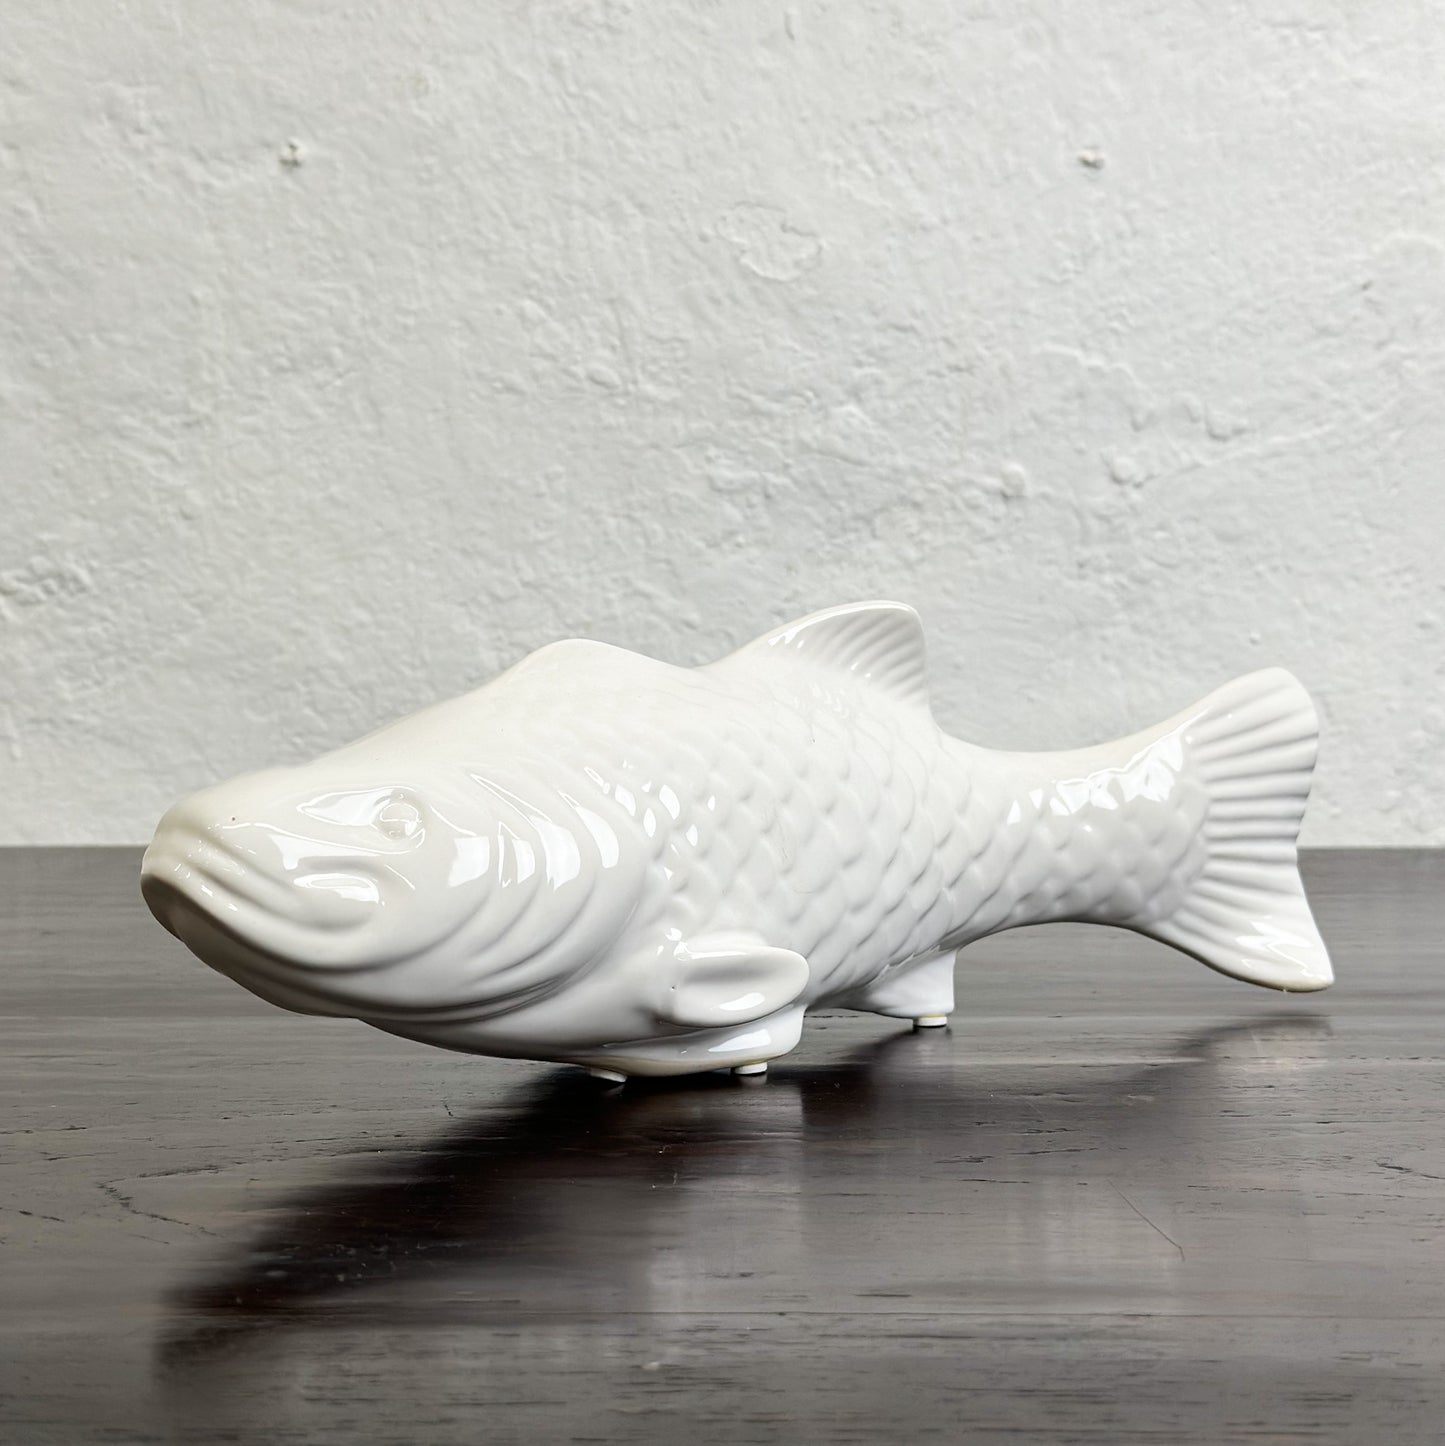 Porcelain Fish